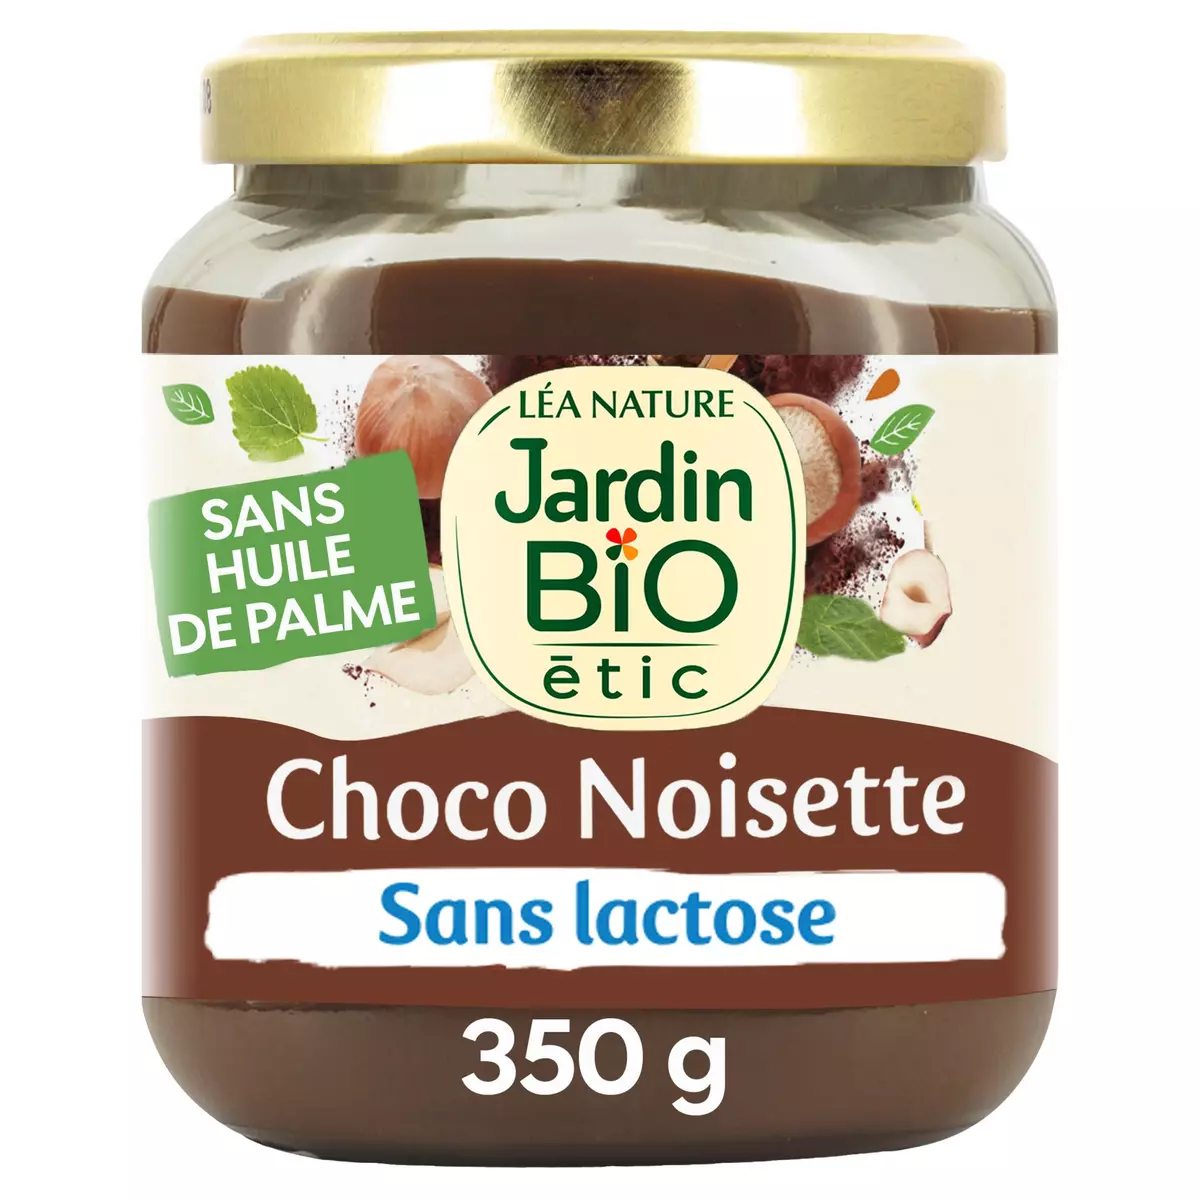 JARDIN BIO ETIC Pâte à tartiner choco noisette sans lactose et sans gluten  350g pas cher 